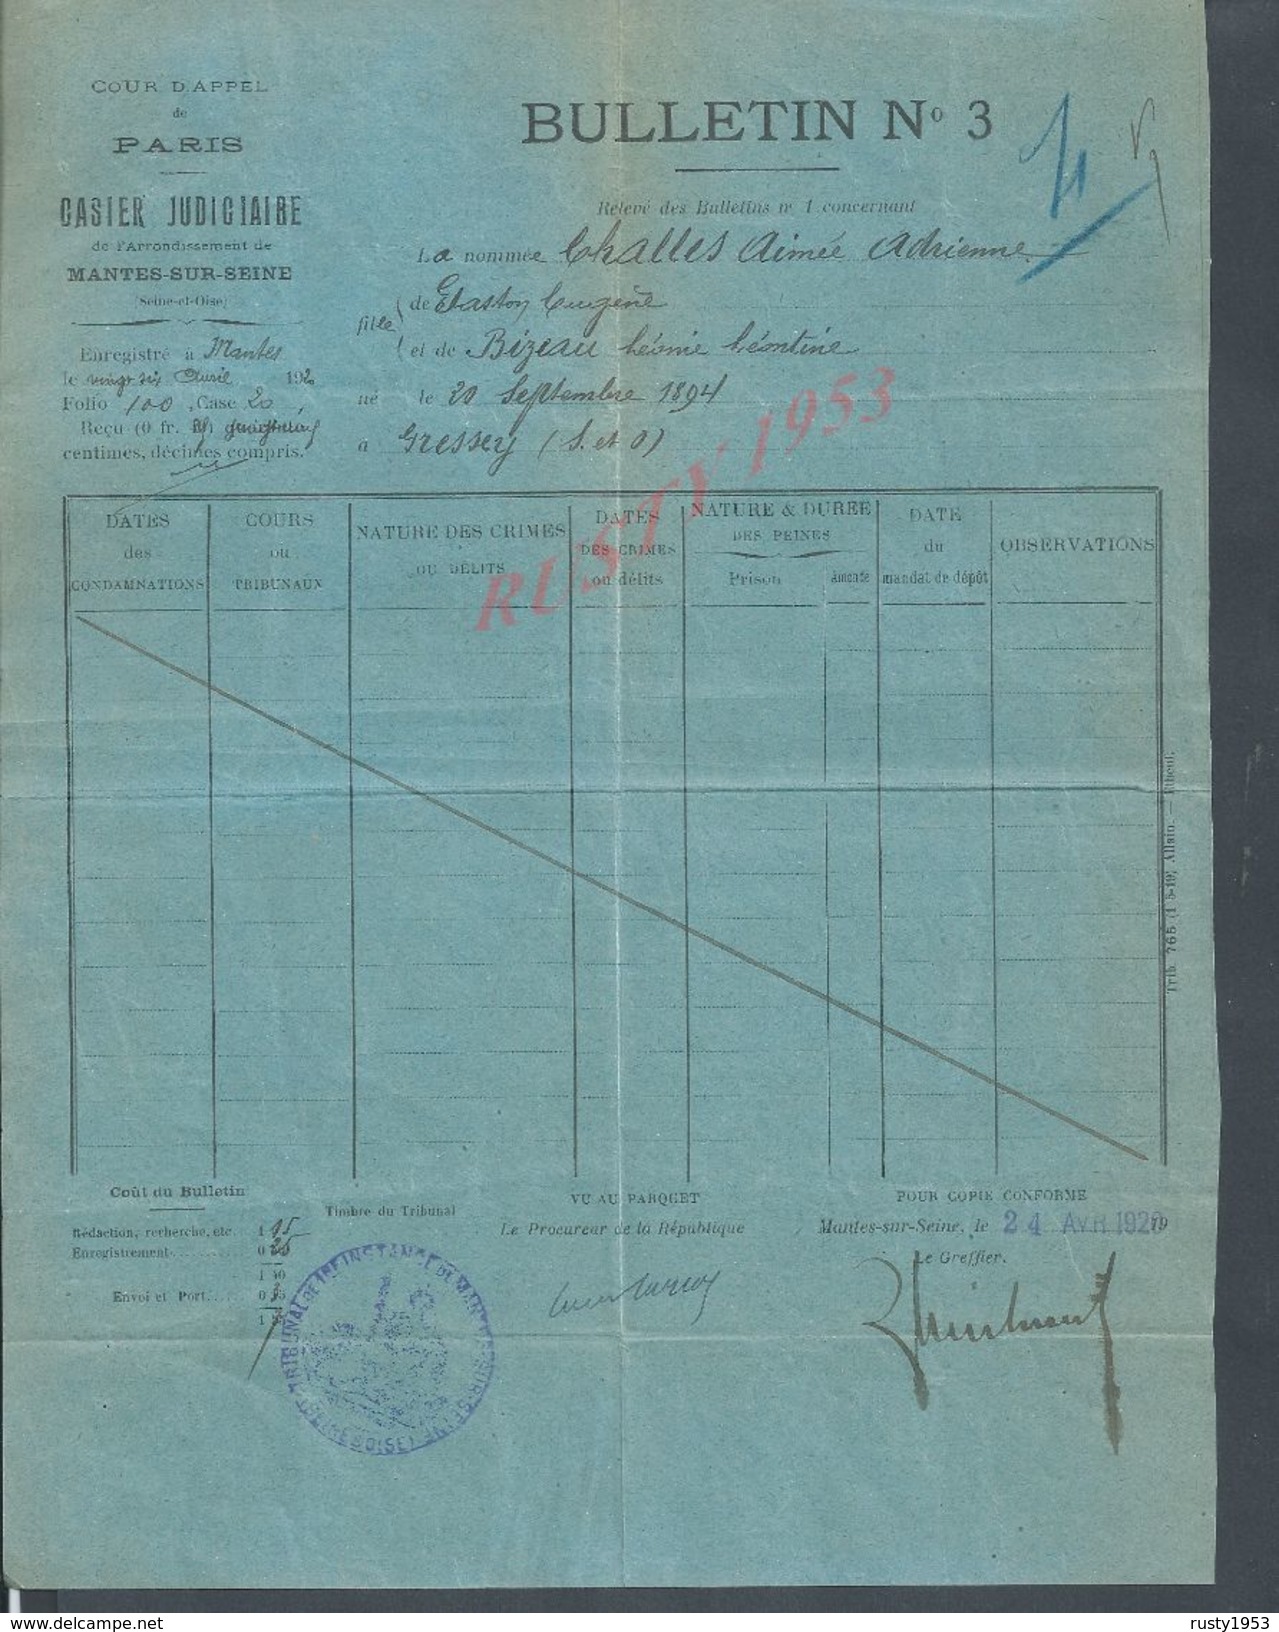 MILITARIA NANTES SUR SEINE X PARIS 1920 BULLETIN DE CASIER JUDICIAIRE DE CHALLES AIMÉE ADRIENNE NÉ À GRESSEY : - Documents